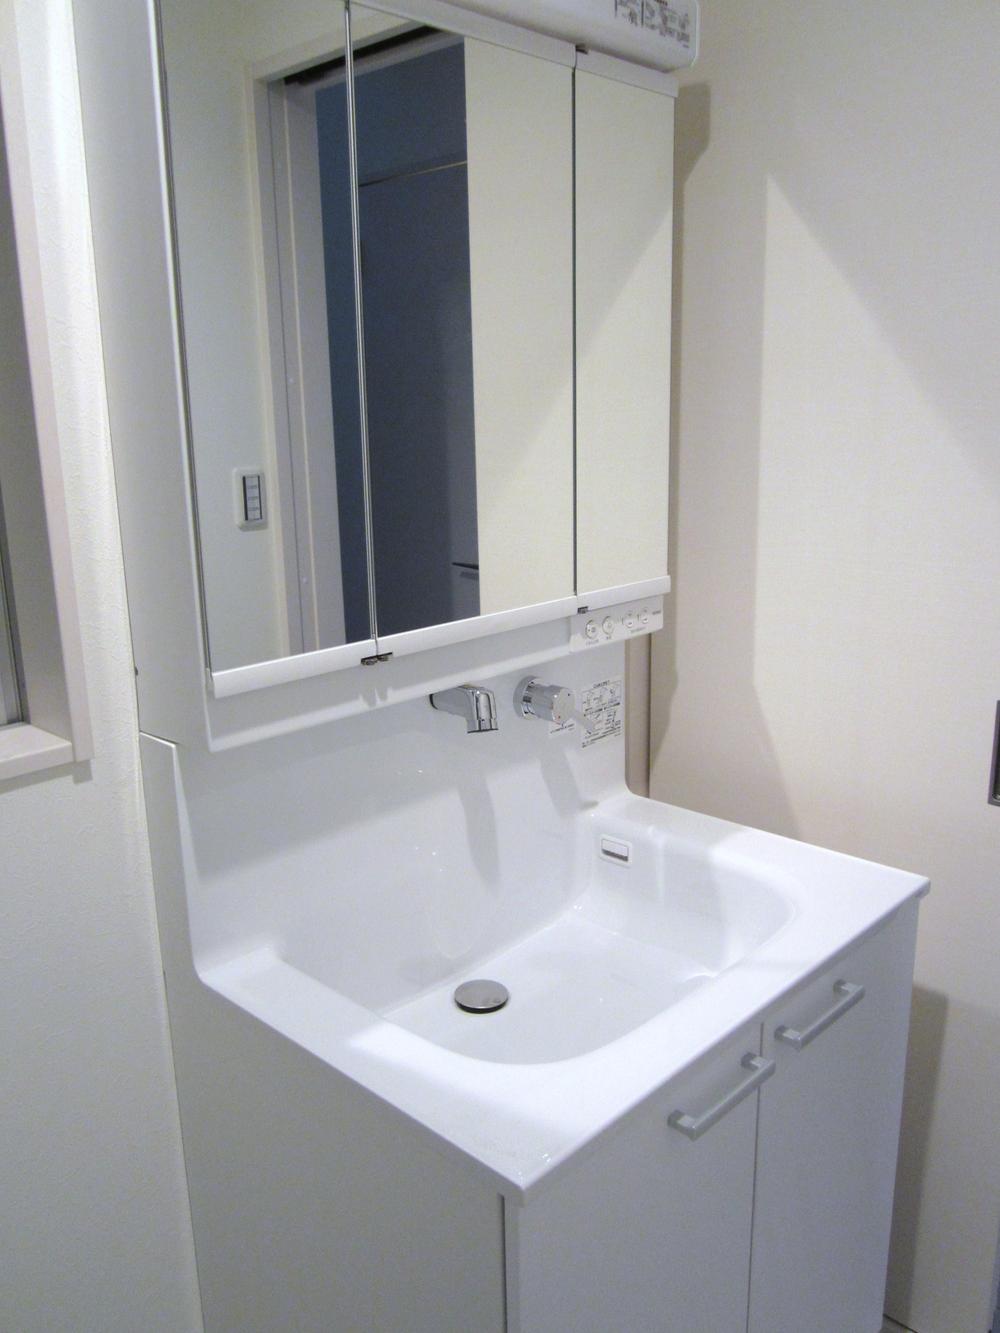 Wash basin, toilet. Shower dresser same specifications